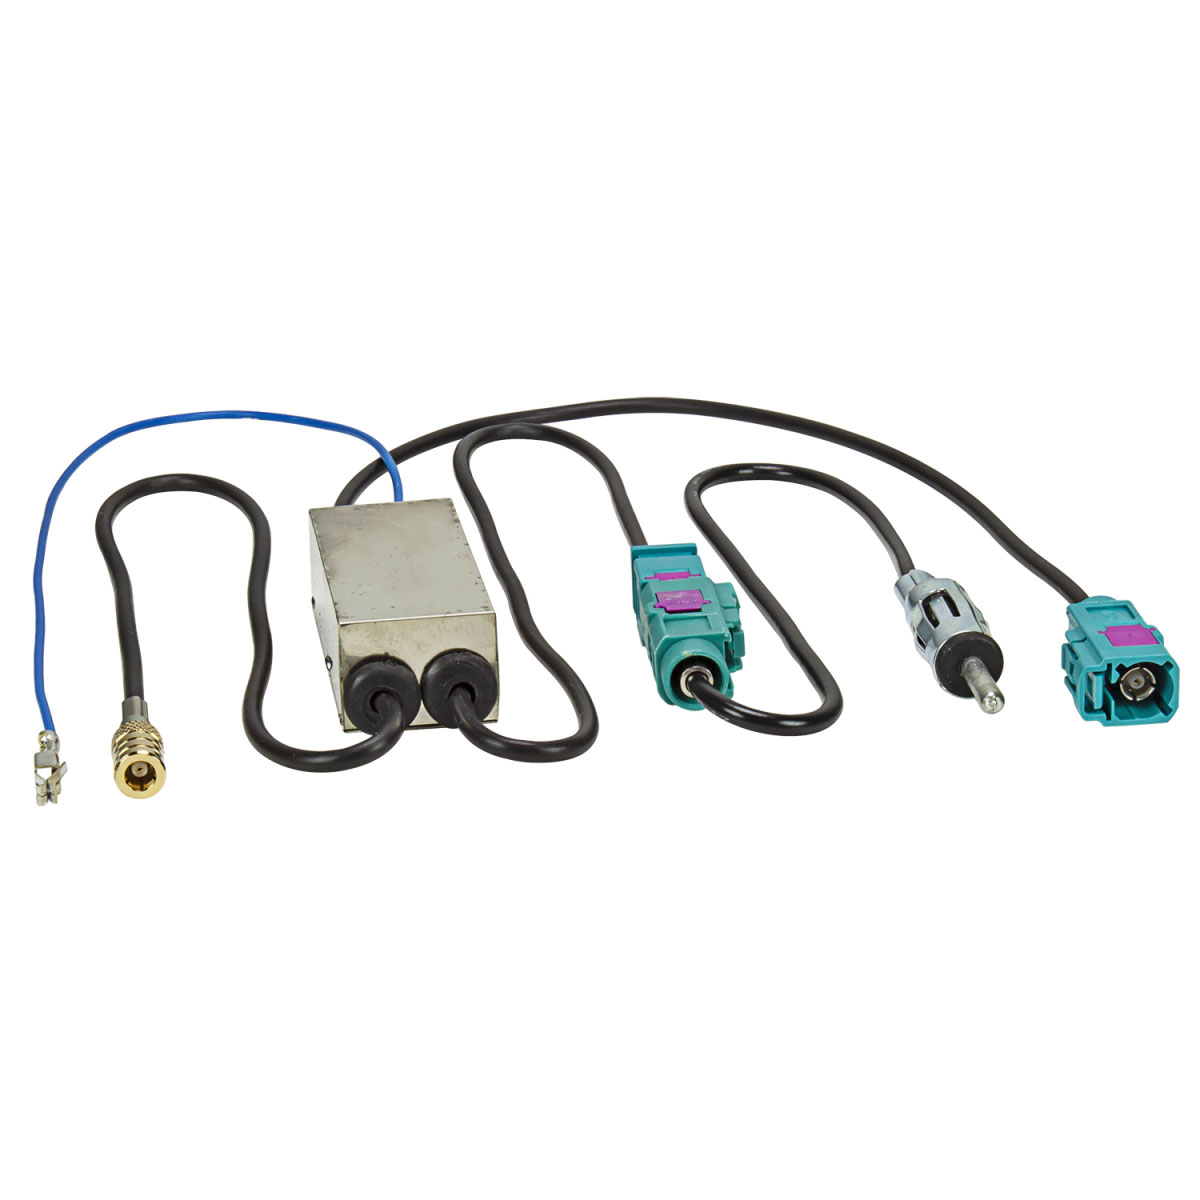 tomzz Audio AM/FM DAB+ Antennensplitter Adapter adaptiert von fakra-/bilder/big/1500-050.jpg